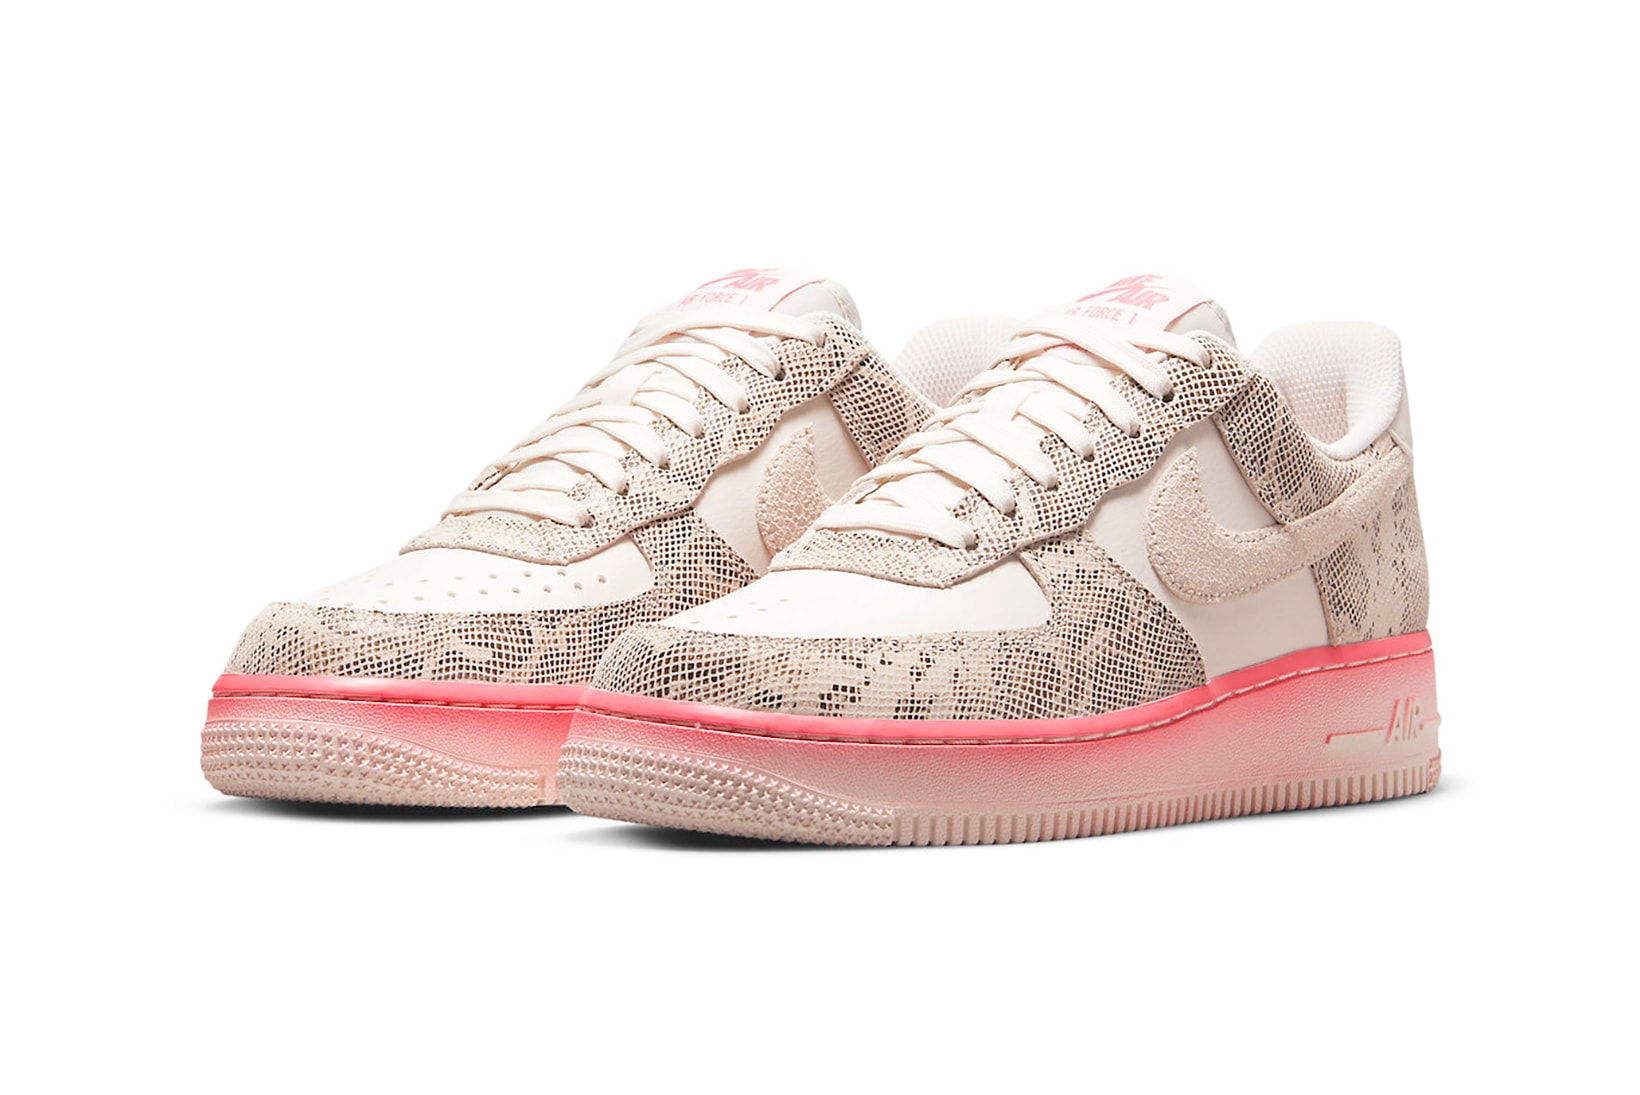 Nike Air Force 1 Low Pink Snakeskin Womens Sneakers Footwear Kicks Shoes Beige